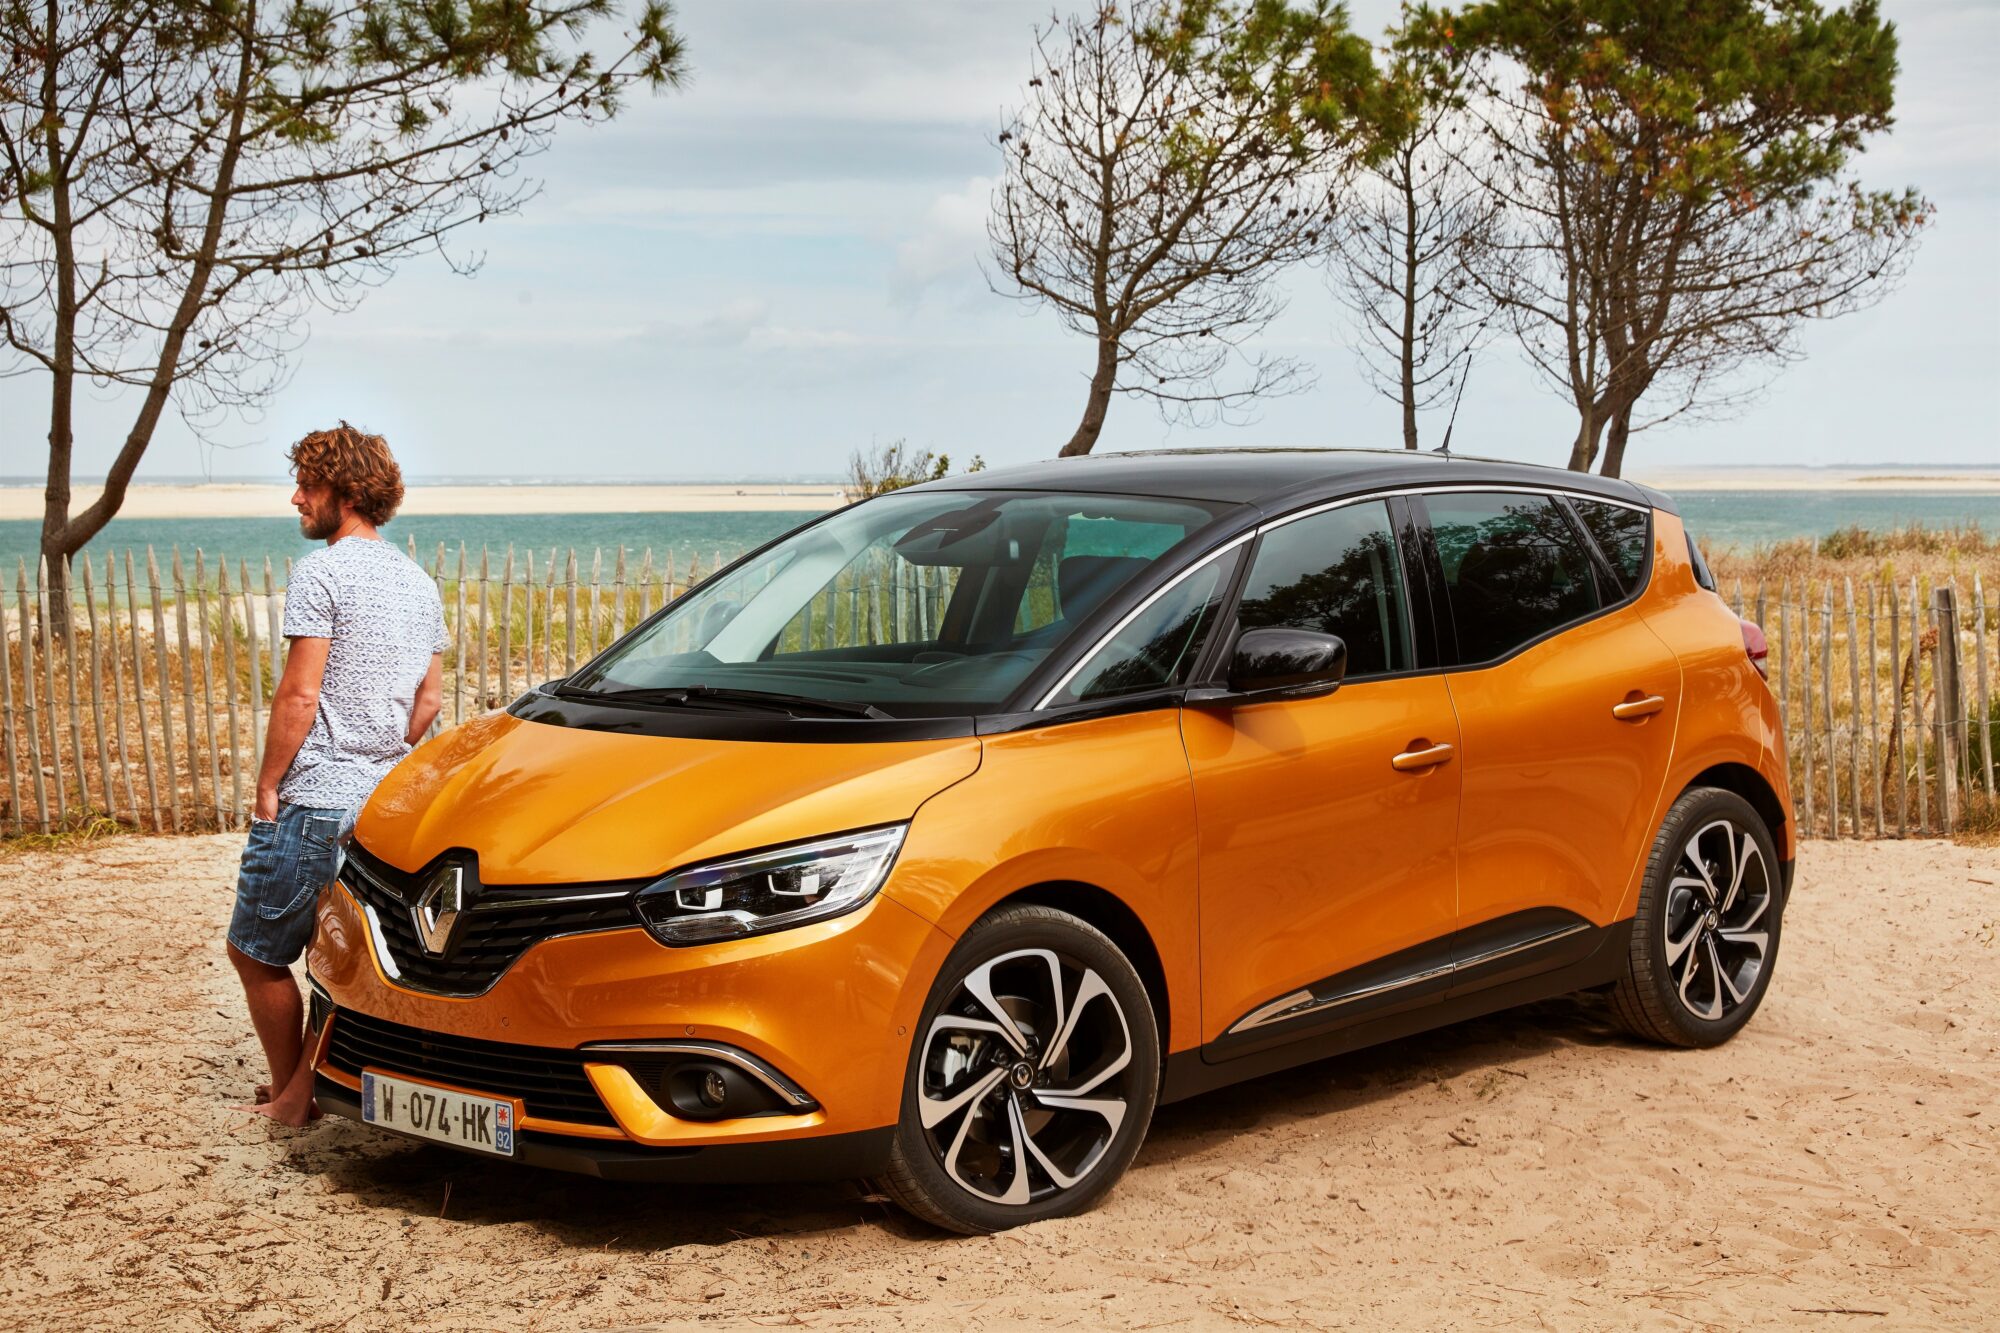 2016- Test Drive Nuova Renault SCENIC e Nuova Renault GRAND SCENIC a Bordeaux